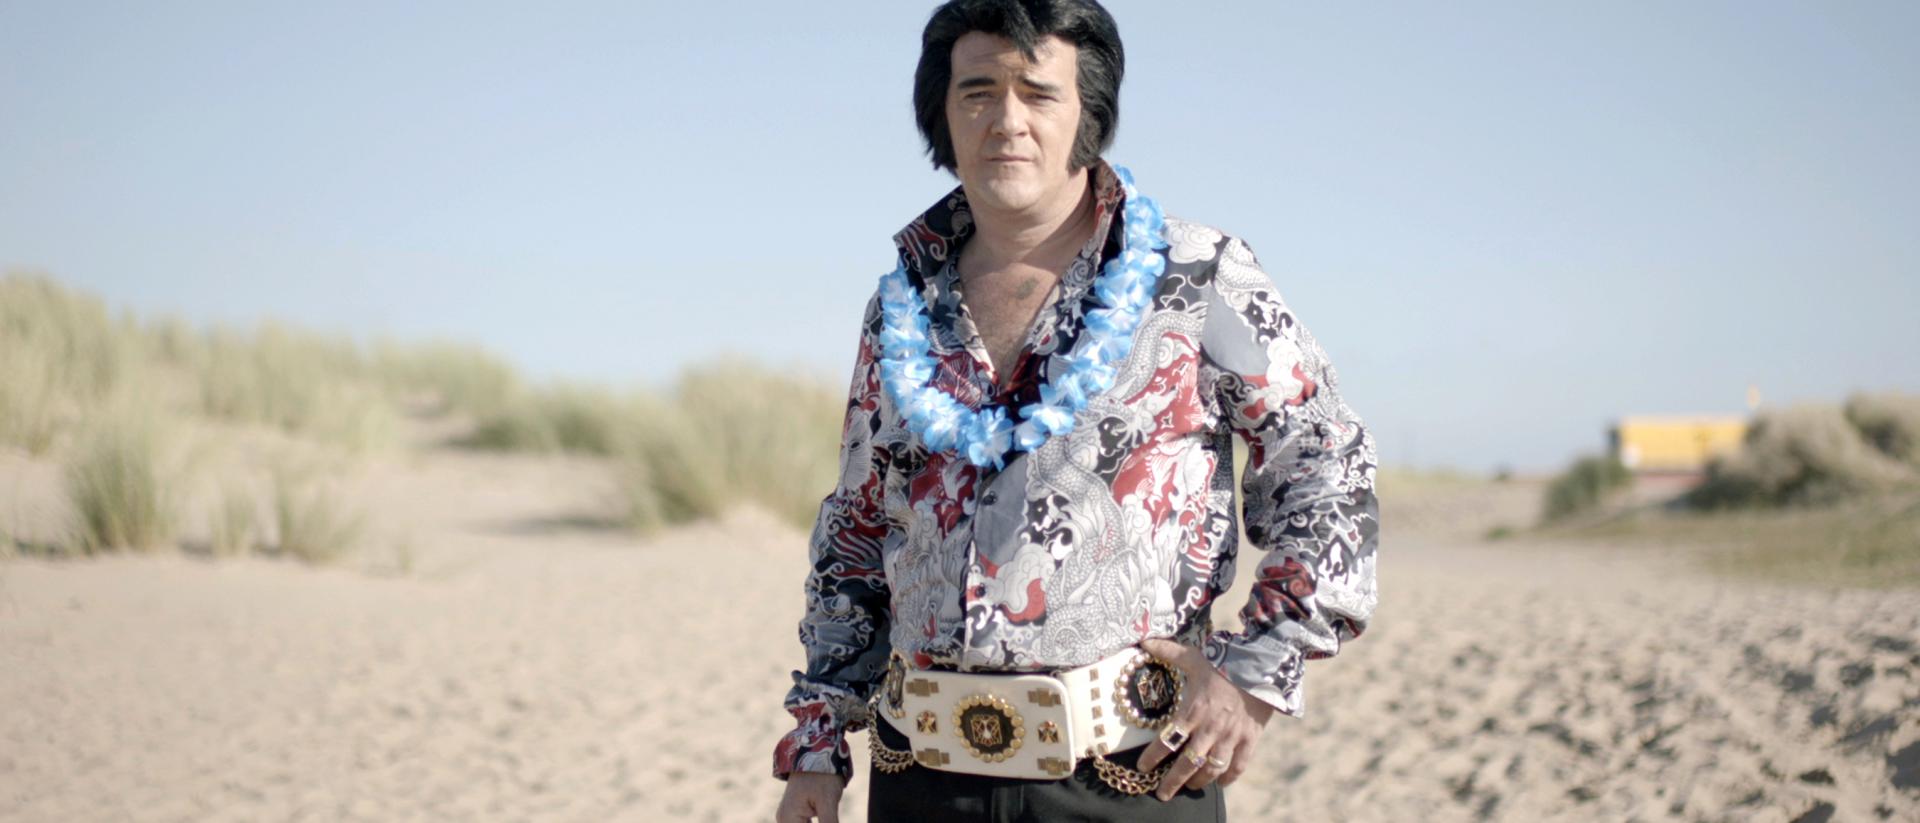 man dressed as Elvis